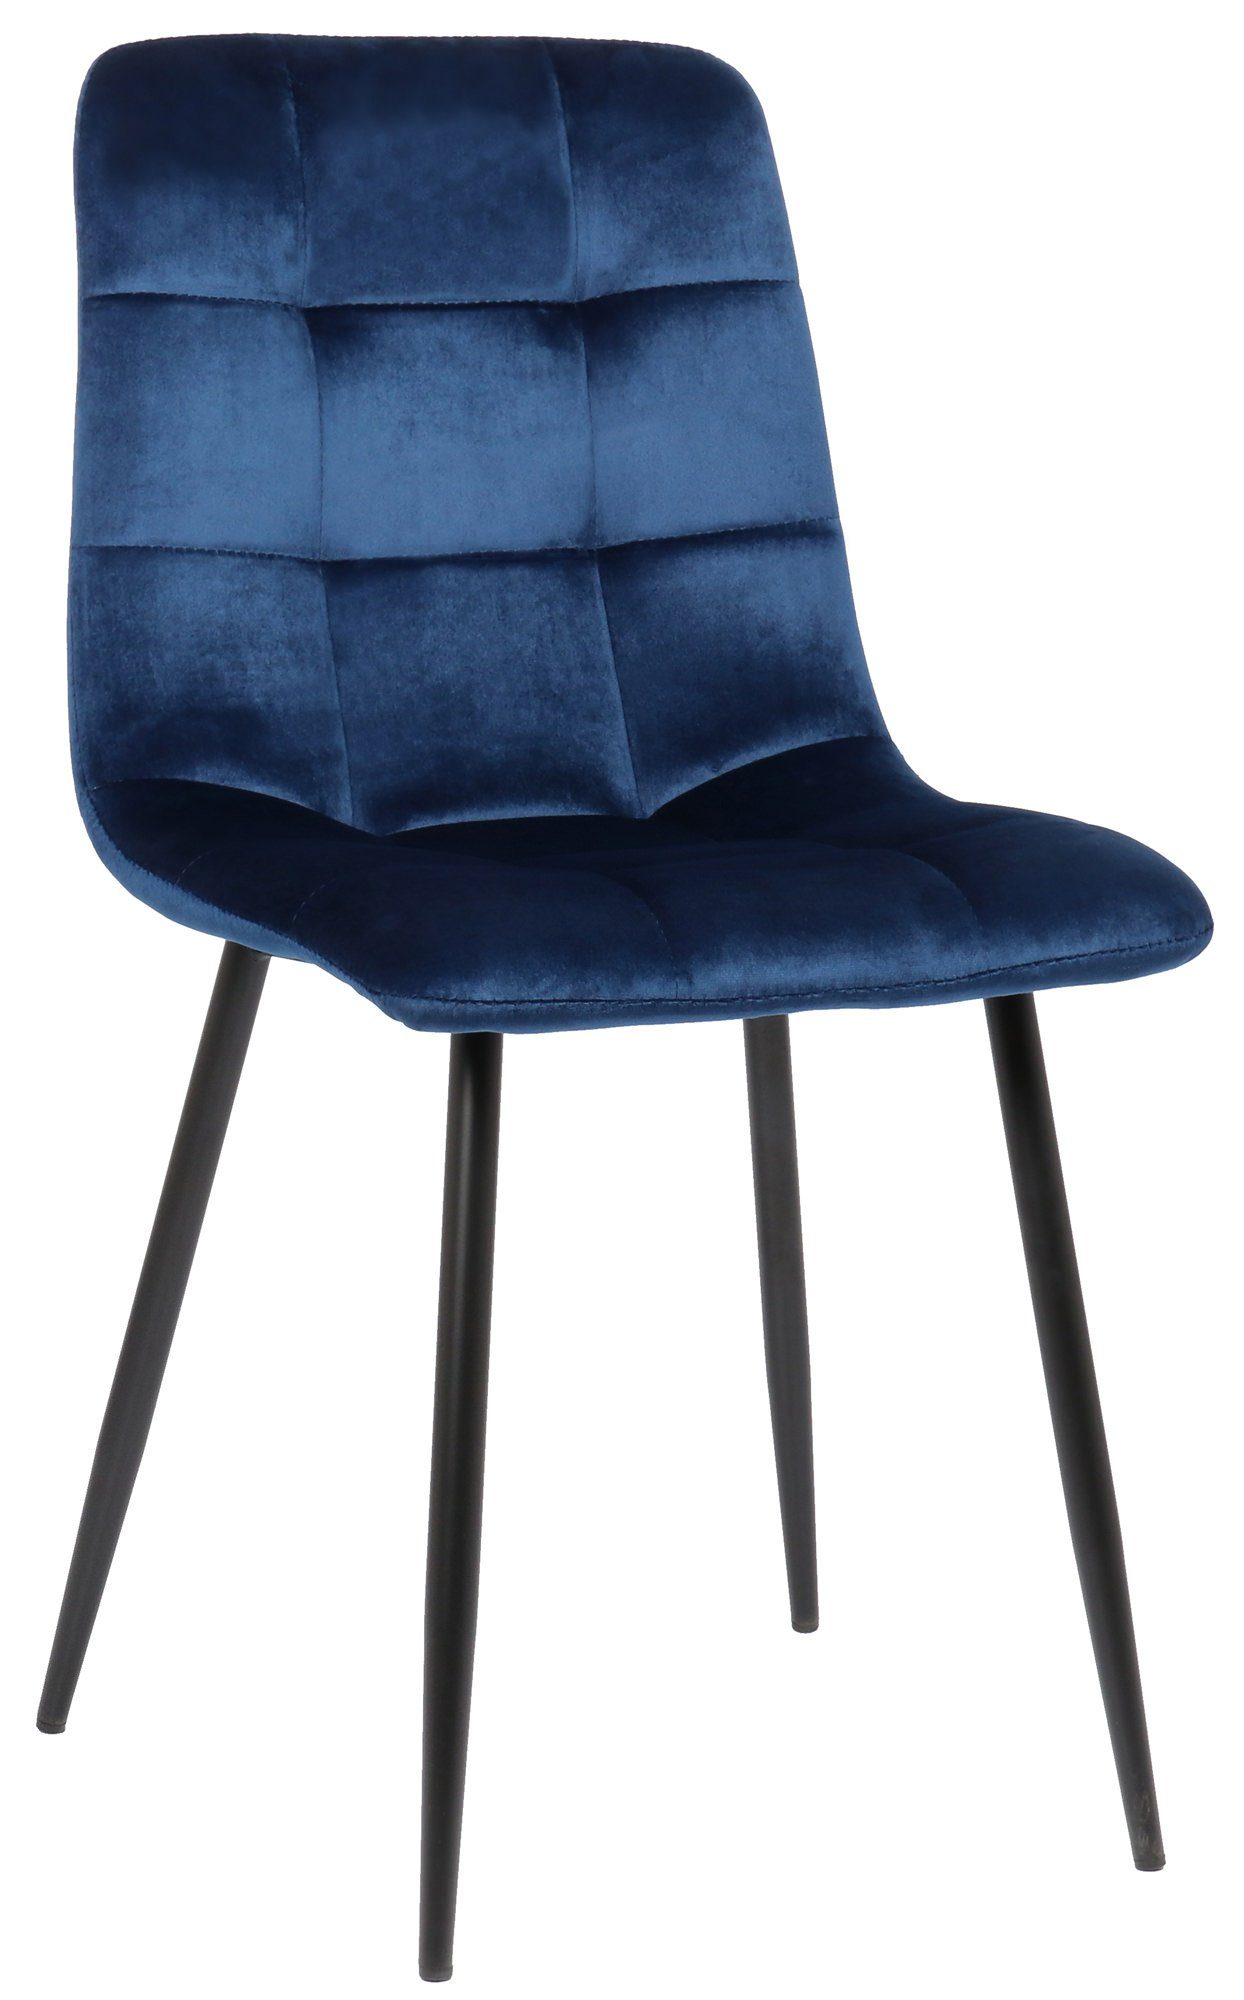 TPFLiving Esszimmerstuhl Till mit hochwertig gepolsterter Sitzfläche - Konferenzstuhl (Küchenstuhl - Esstischstuhl - Wohnzimmerstuhl - Polsterstuhl), Gestell: Metall schwarz - Sitzfläche: Samt blau